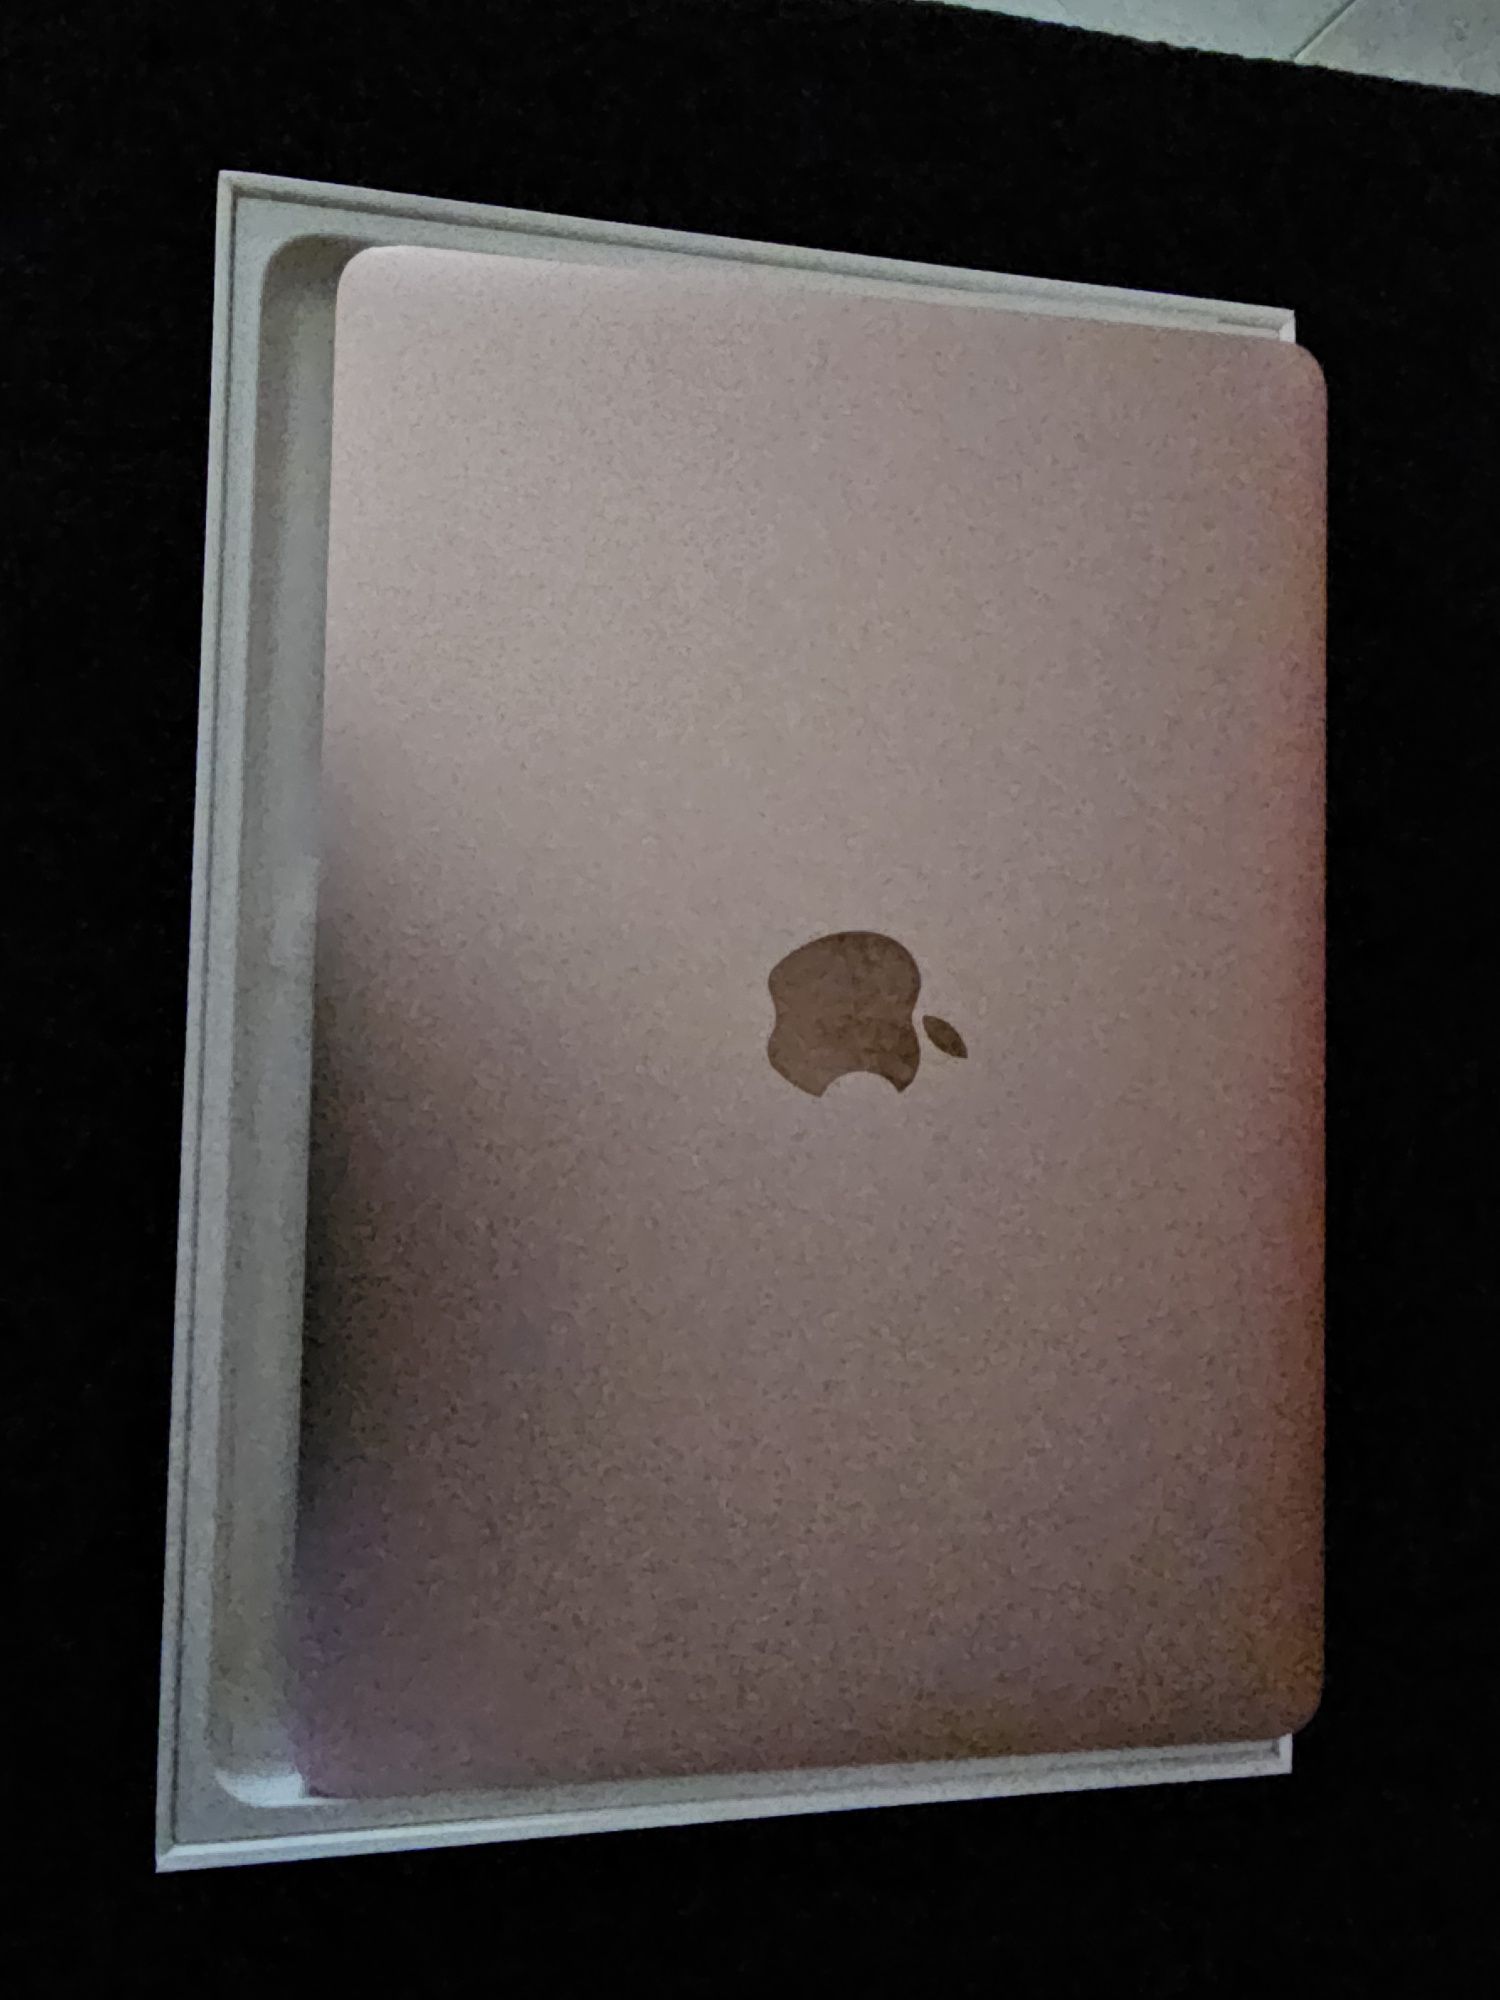 McBook 12 polegadas 8 GB Rosa Gold NOVO